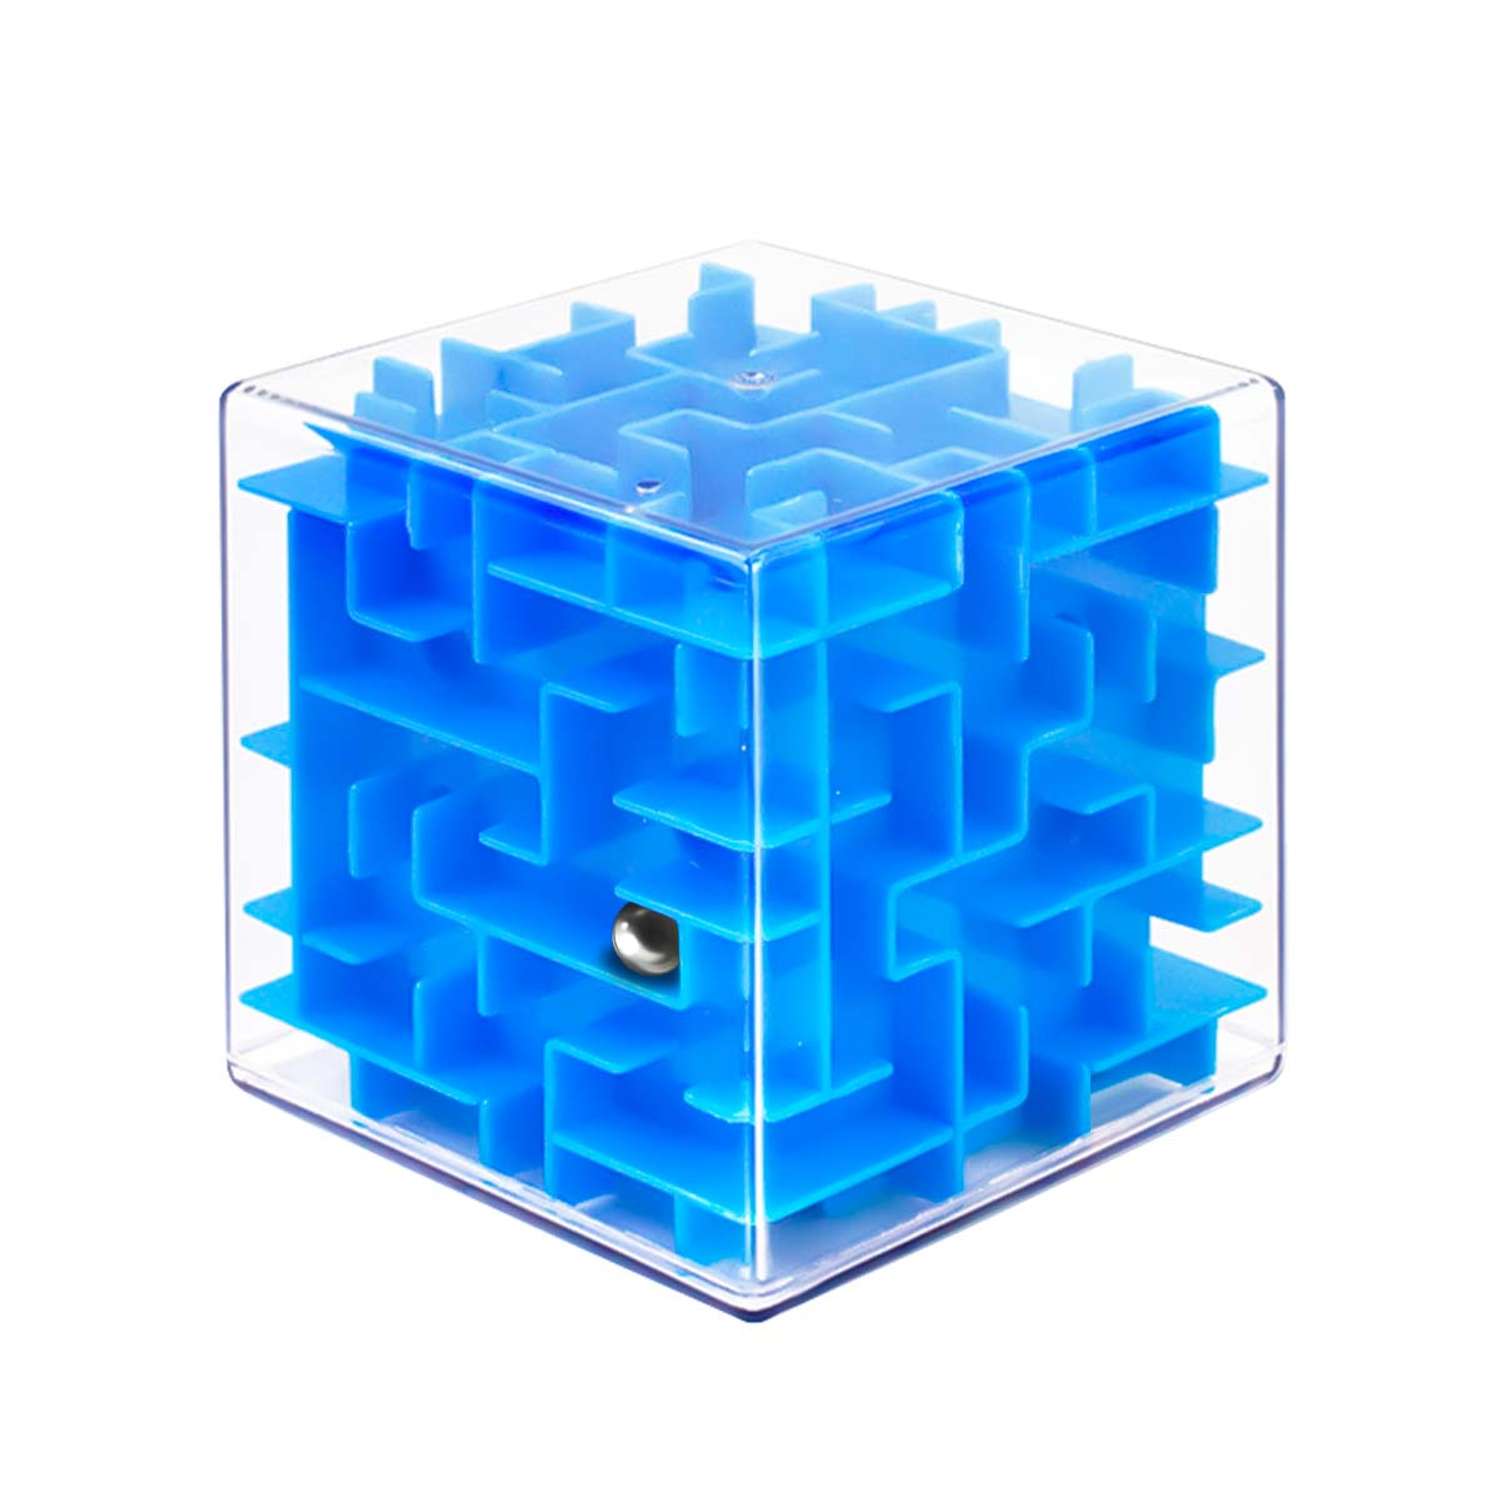 Головоломка для детей WiMI логический куб с шариком синий - фото 1